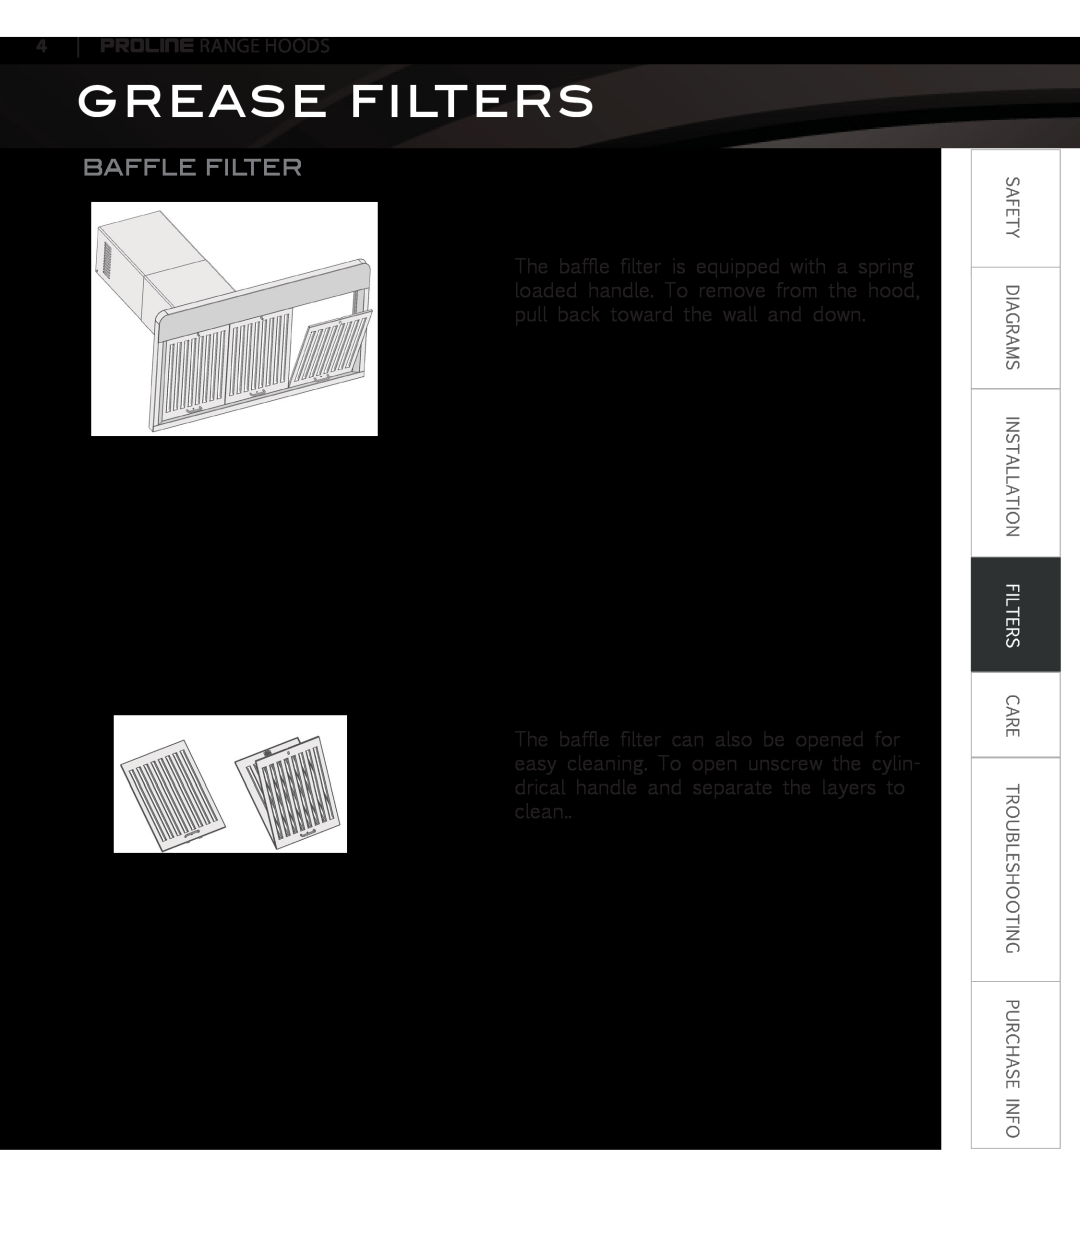 Proline PLJW129, PLJW109, PLJW125, PLFW108 user manual Grease Filters, Baffle Filter 